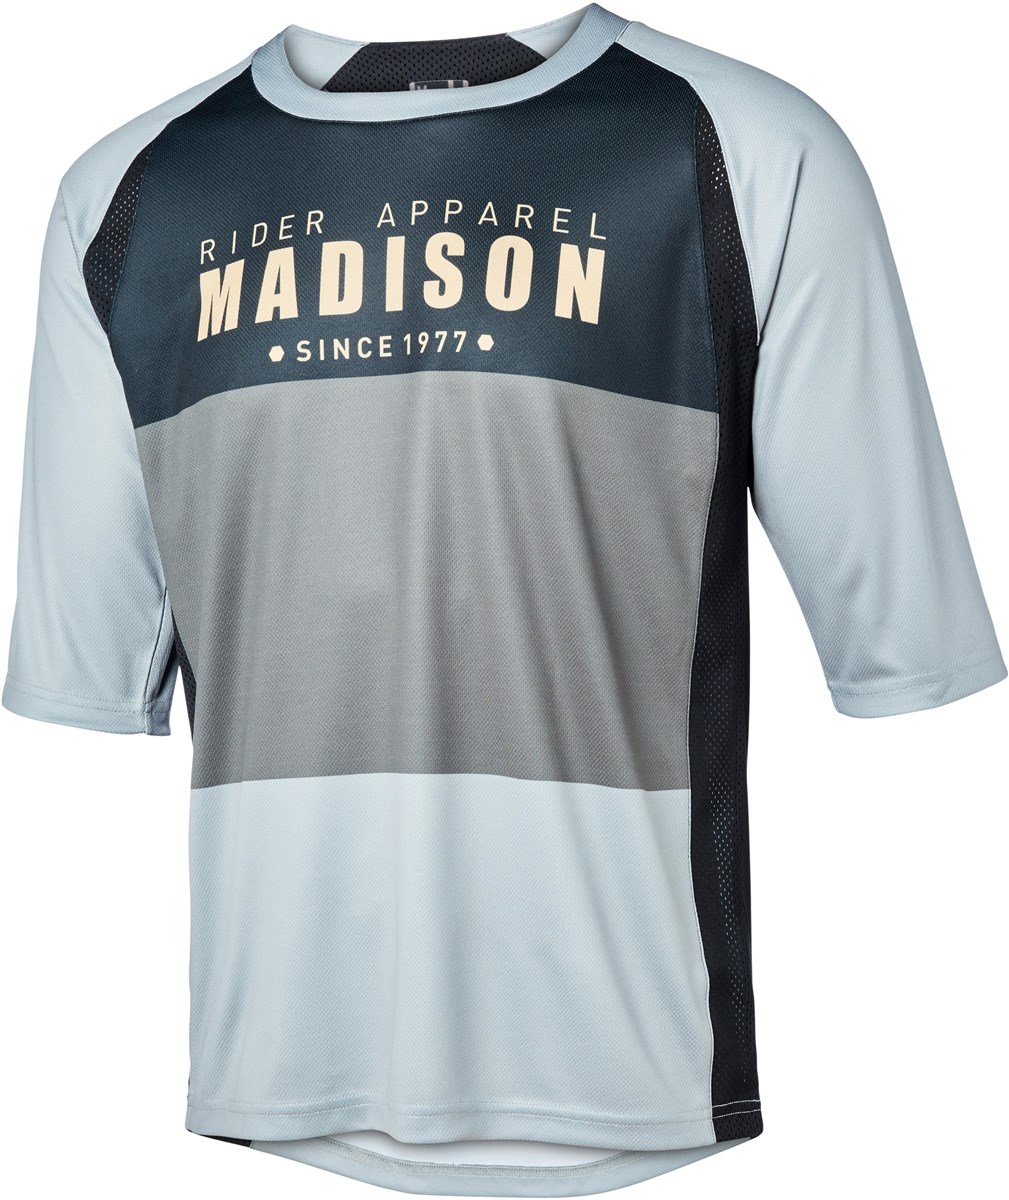 Madison Alpine 3/4 Sleeve Jersey product image